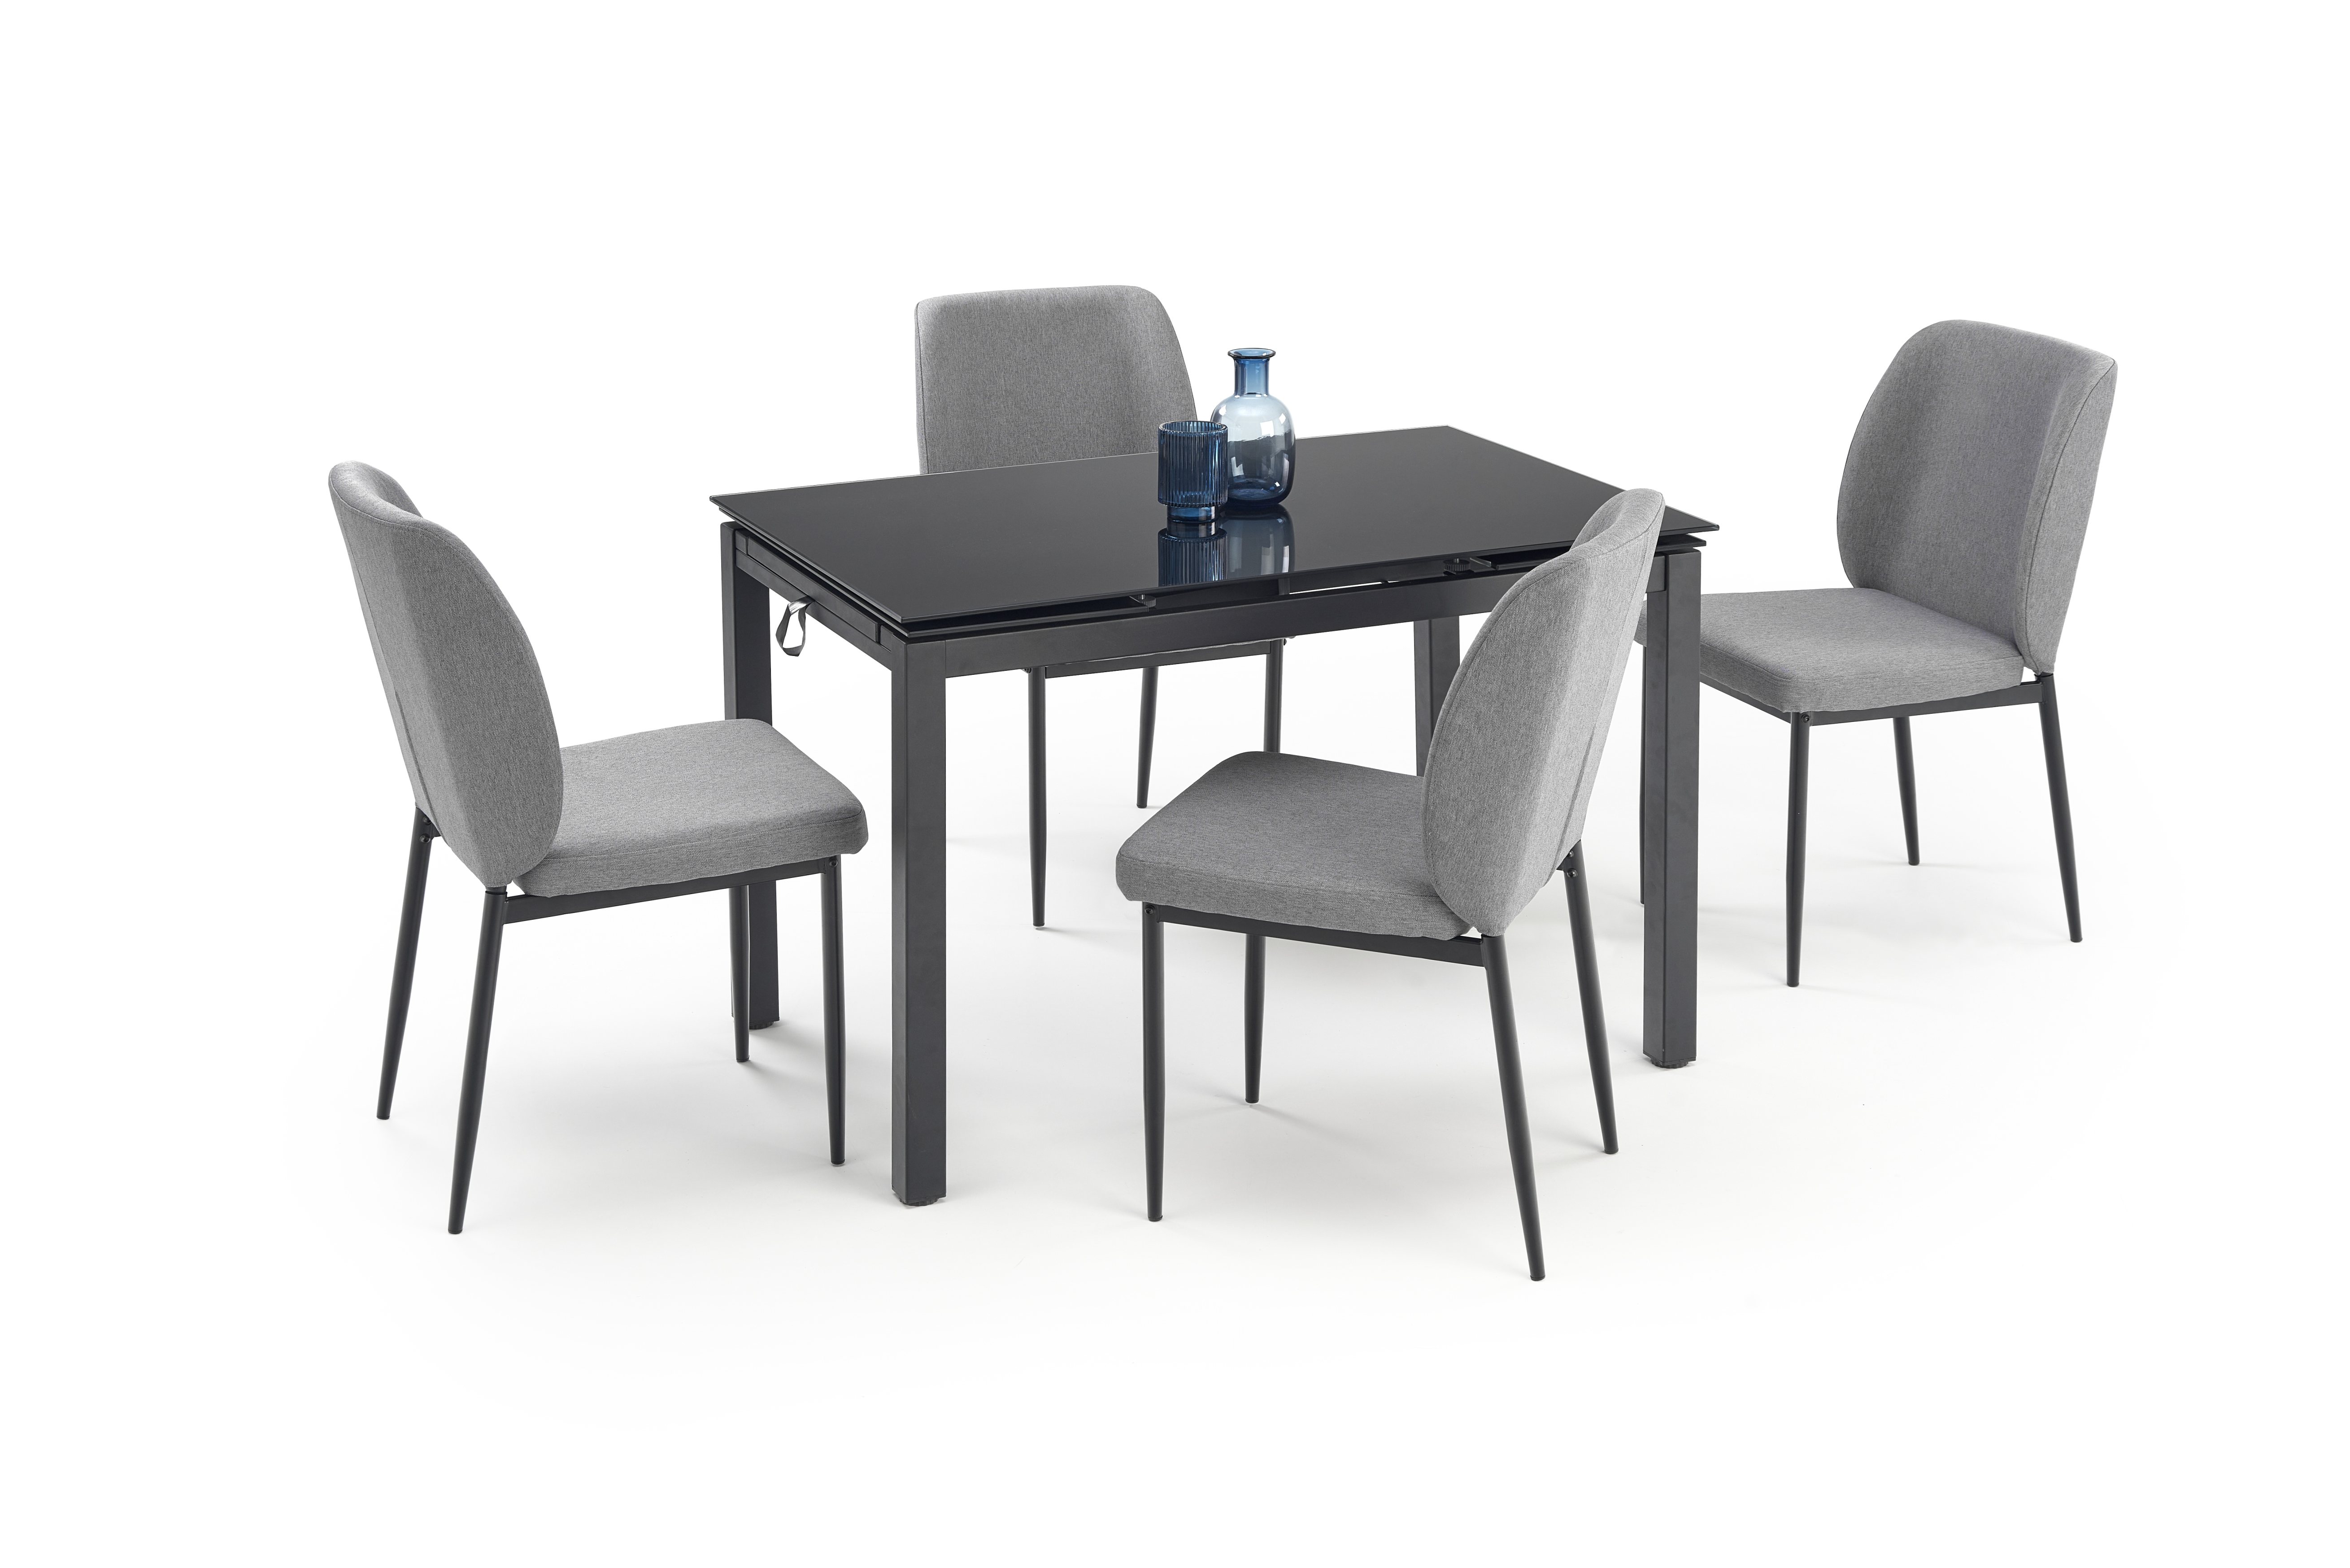 Stół rozkładany do jadalni 110-170 z 4 krzesłami Jasper - popielaty / czarny jasper stół + 4 krzesła